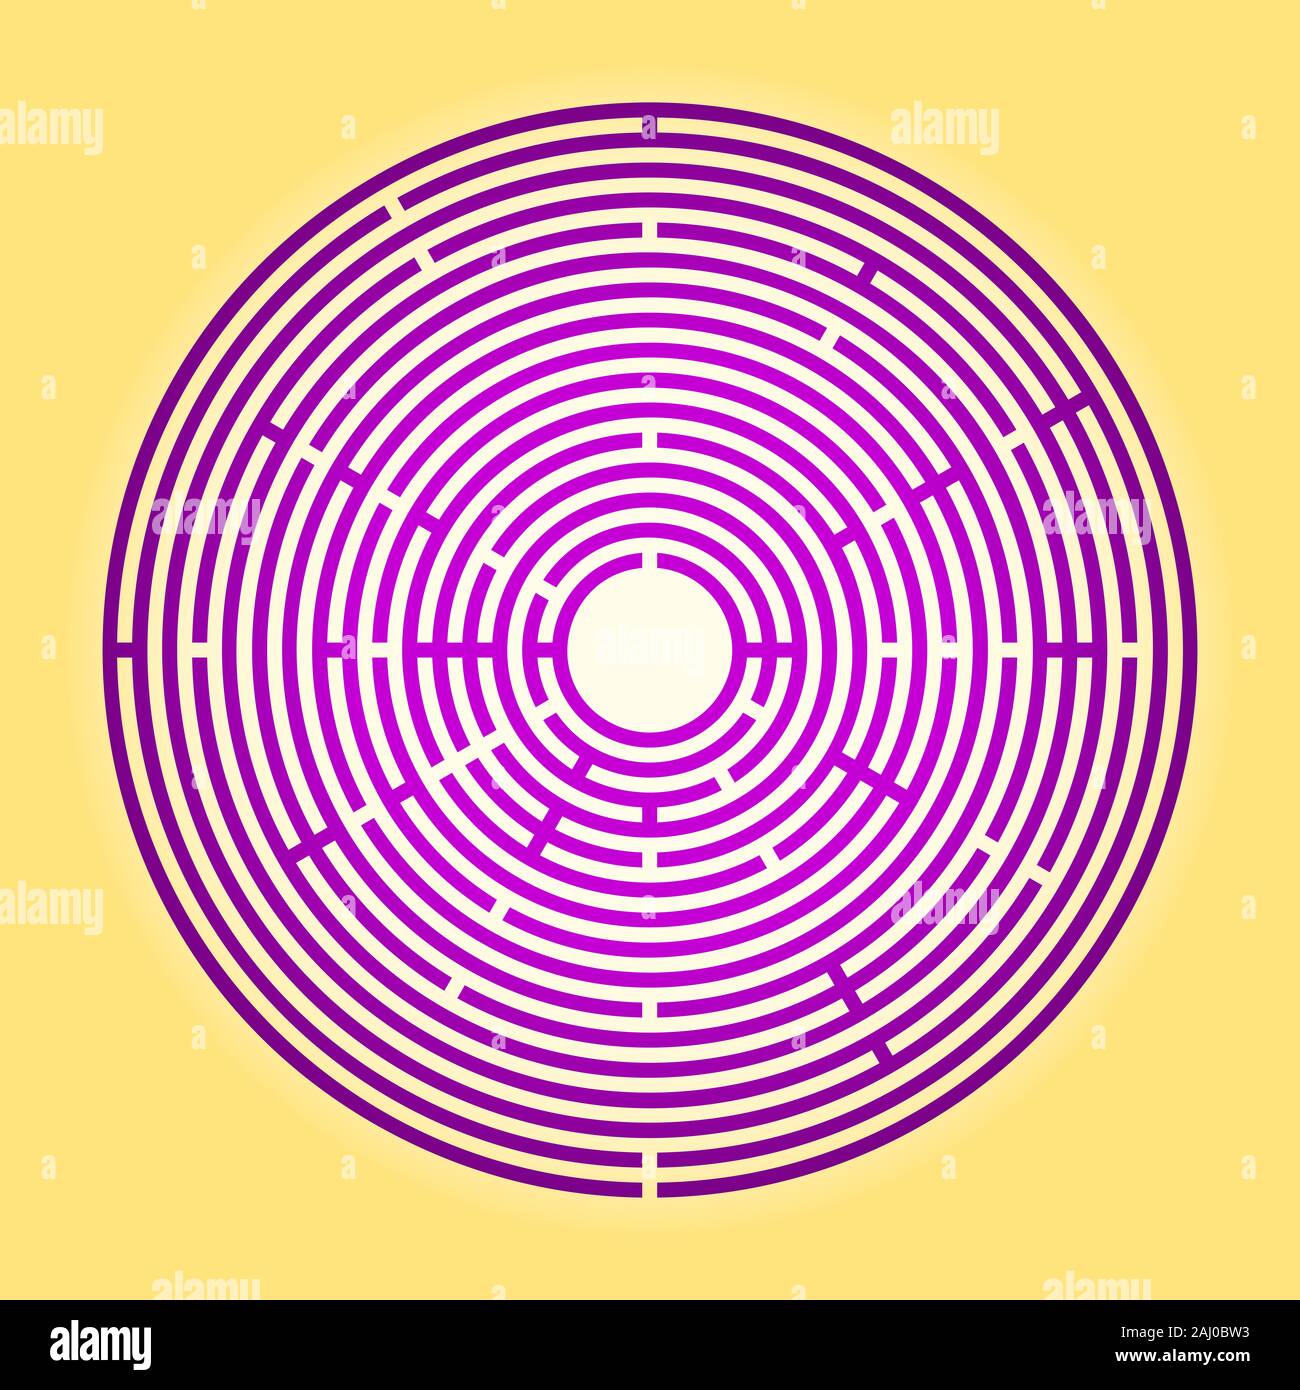 Colorata circolare grande labirinto. Grande viola labirinto radiale su sfondo giallo. Trovare un percorso al centro, seguire il percorso verso l'obiettivo. Foto Stock